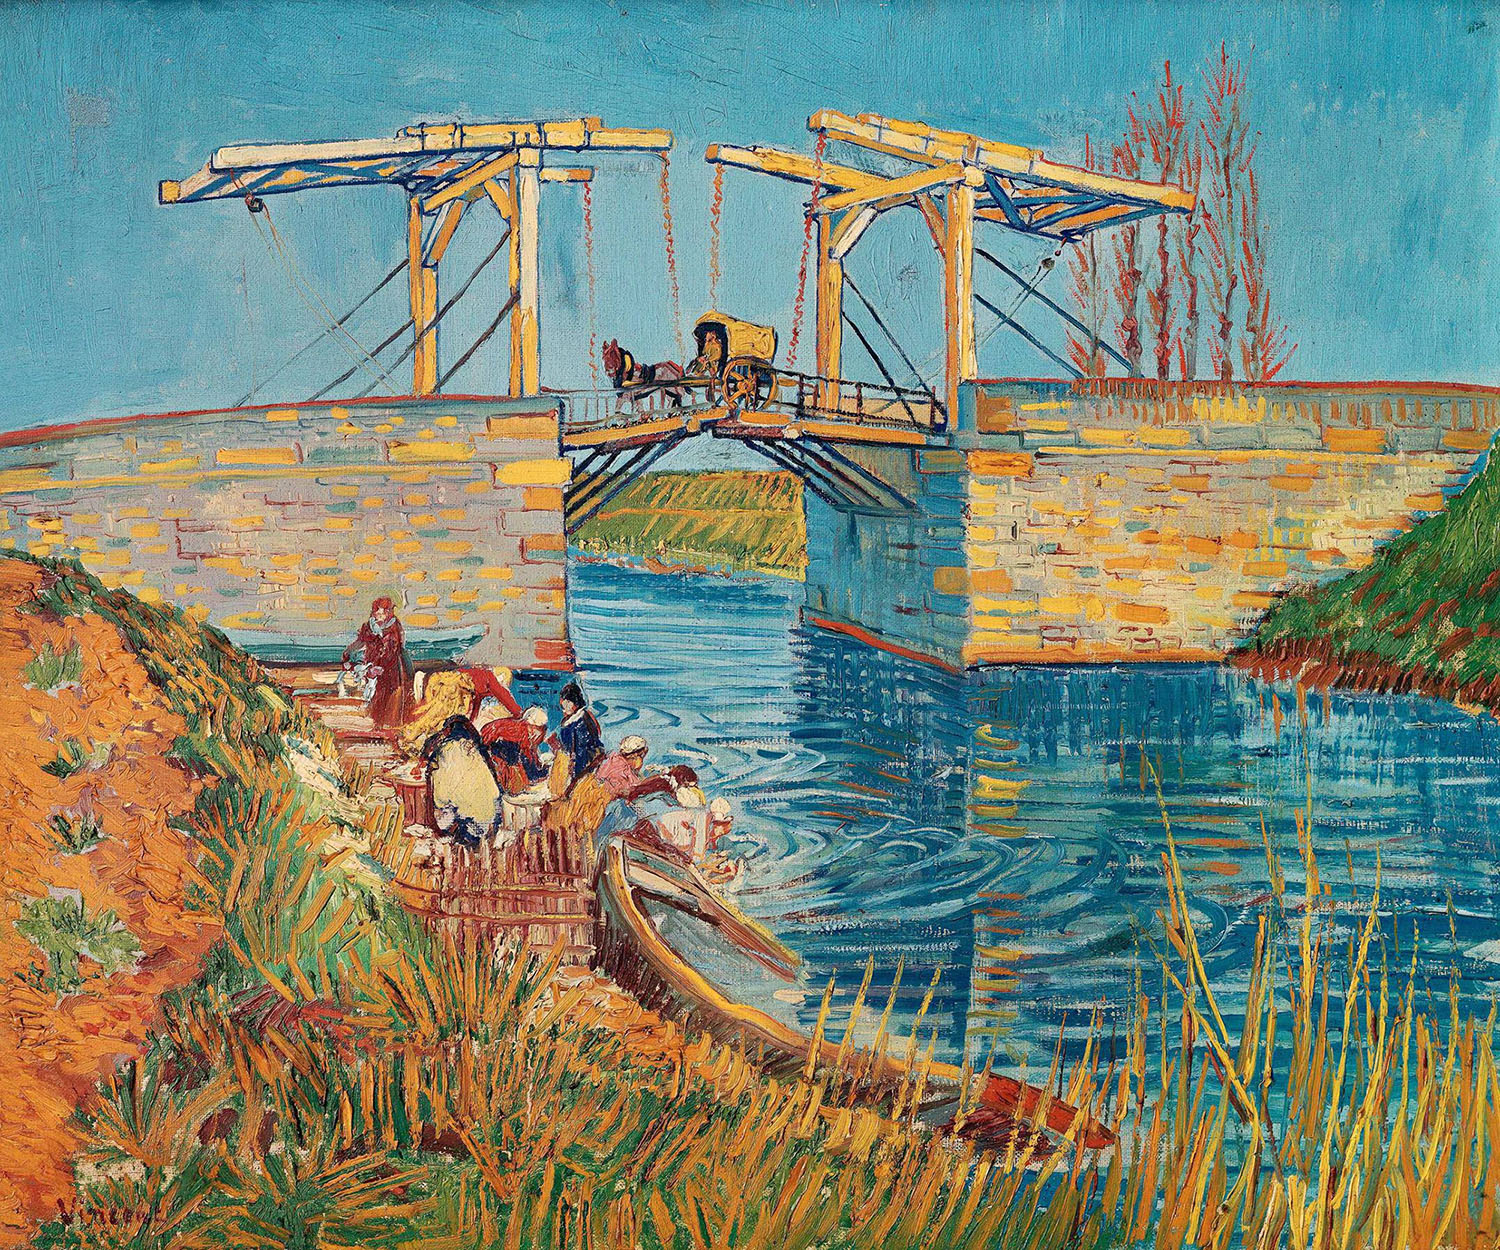 Винсент Ван Гог. "Мост Ланглуа в Арле с прачками". 1888.